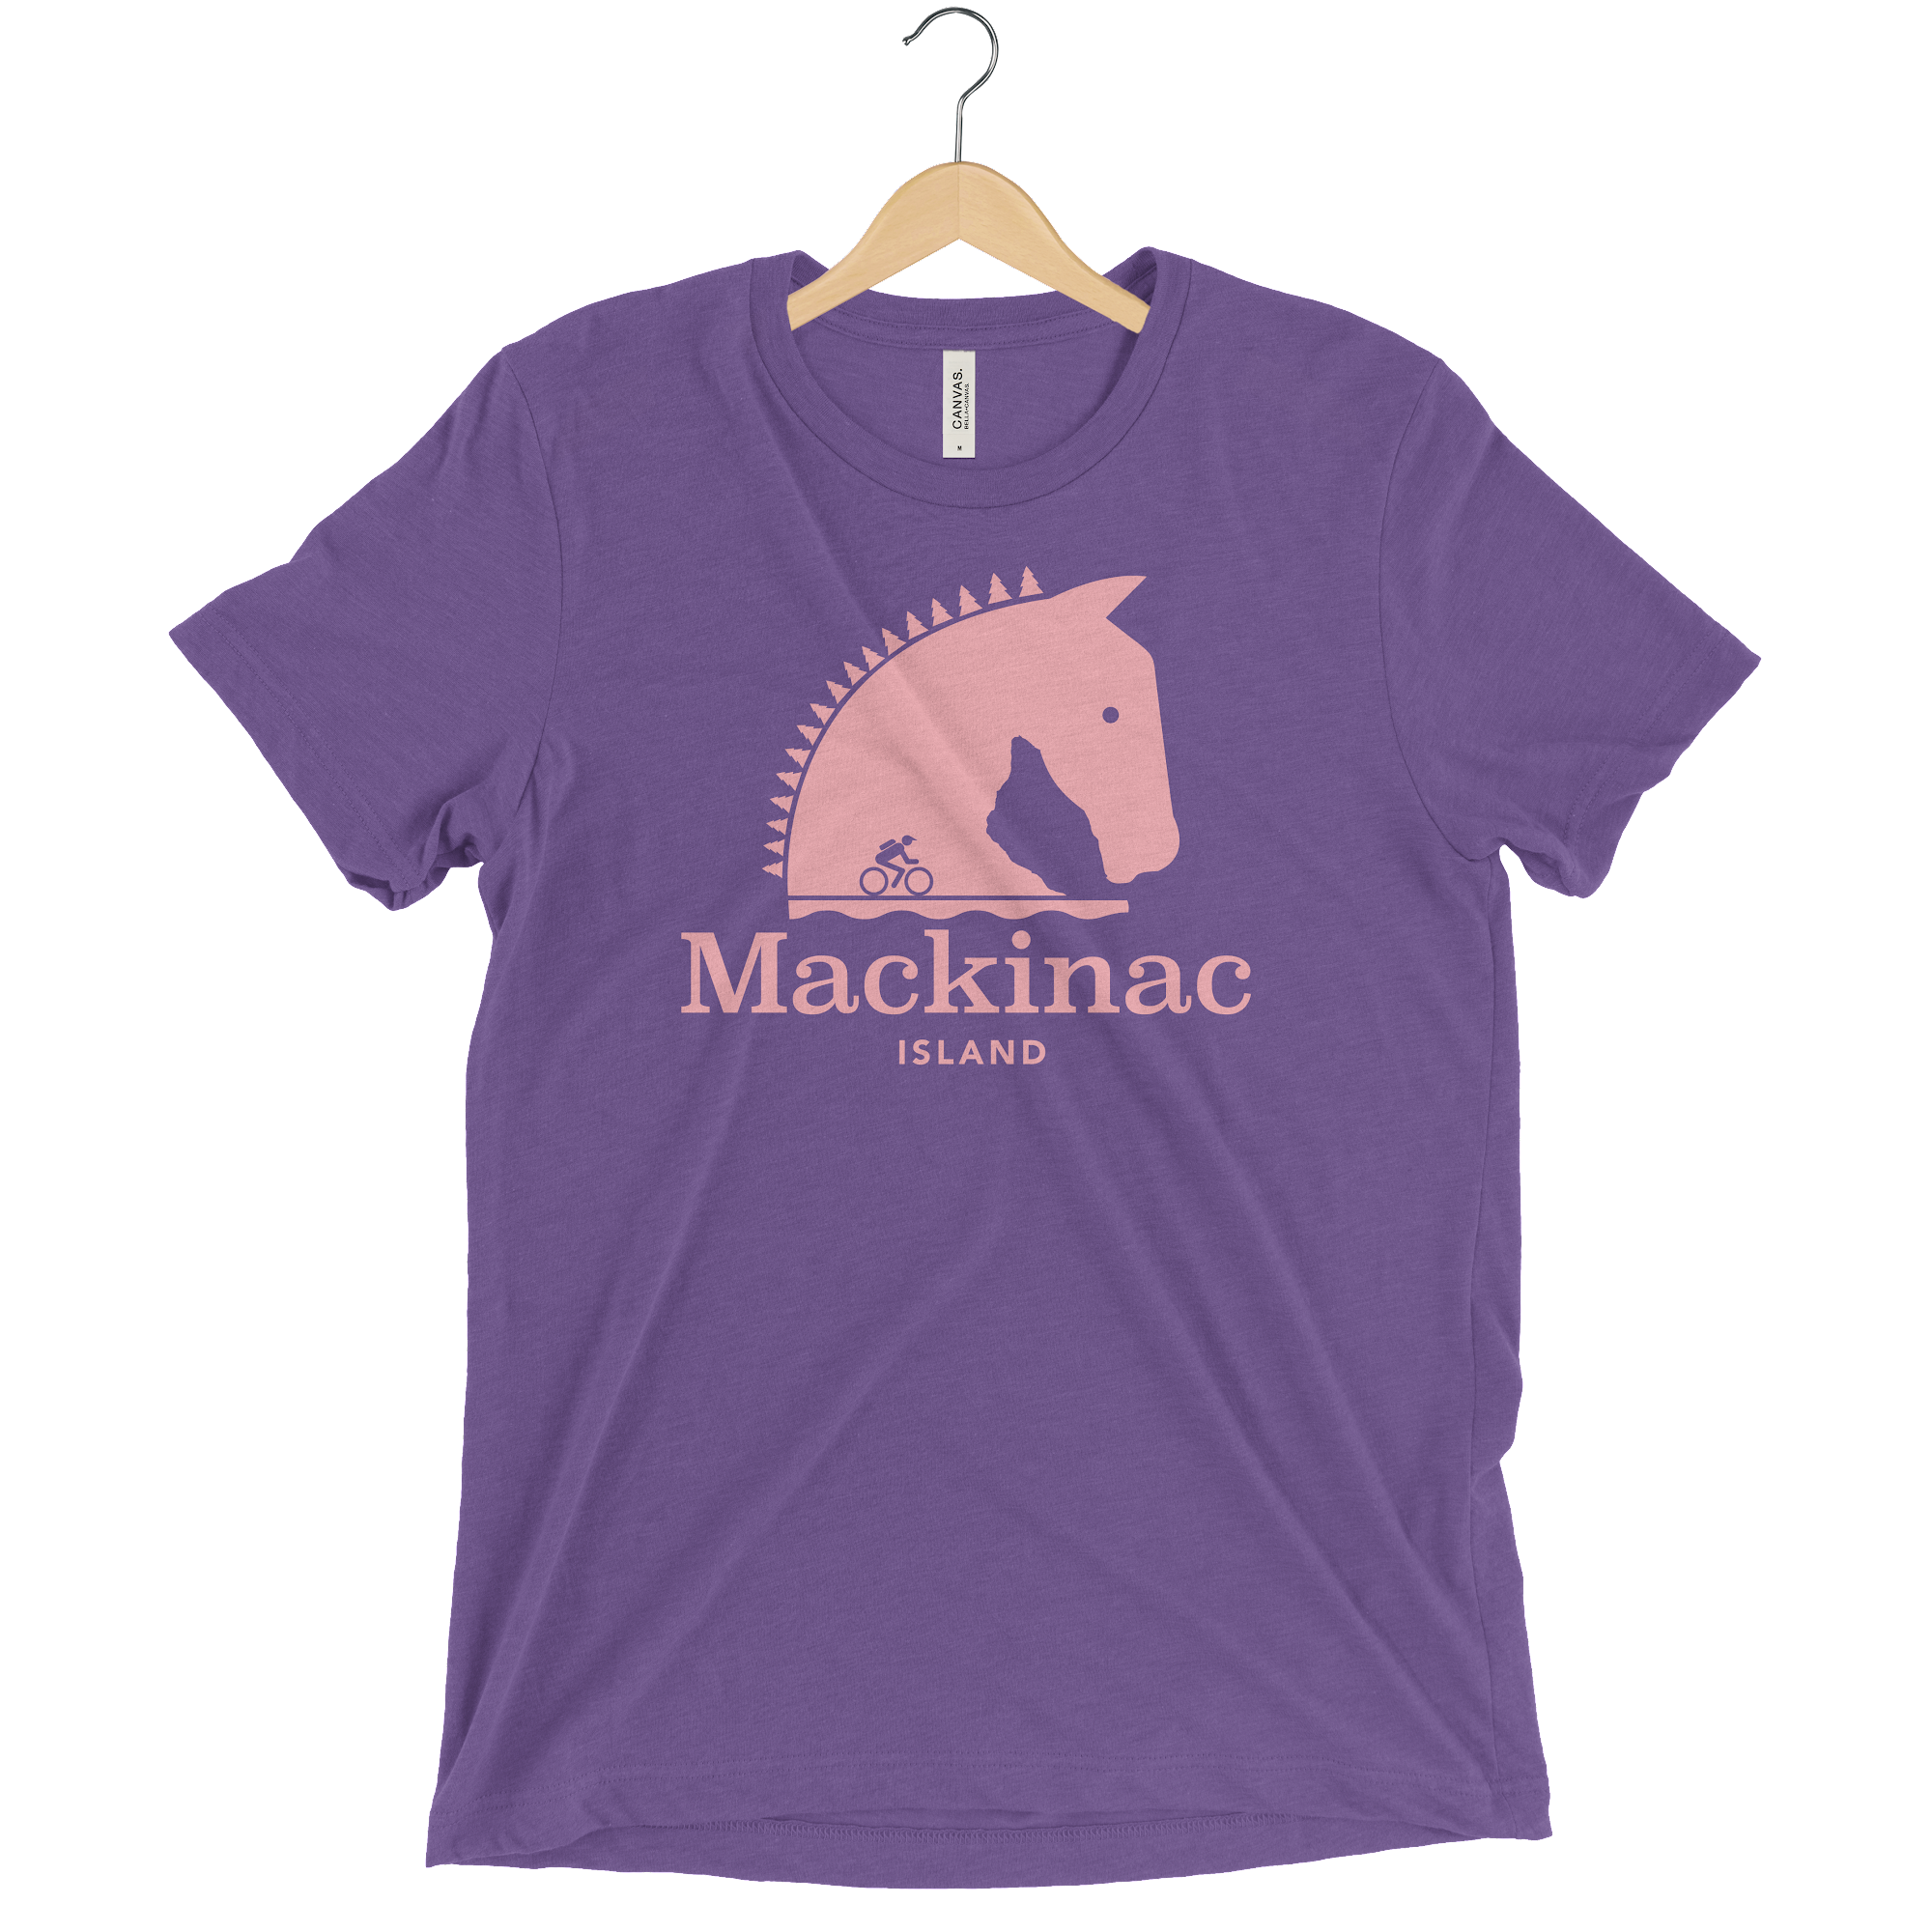 Threads of Mackinac